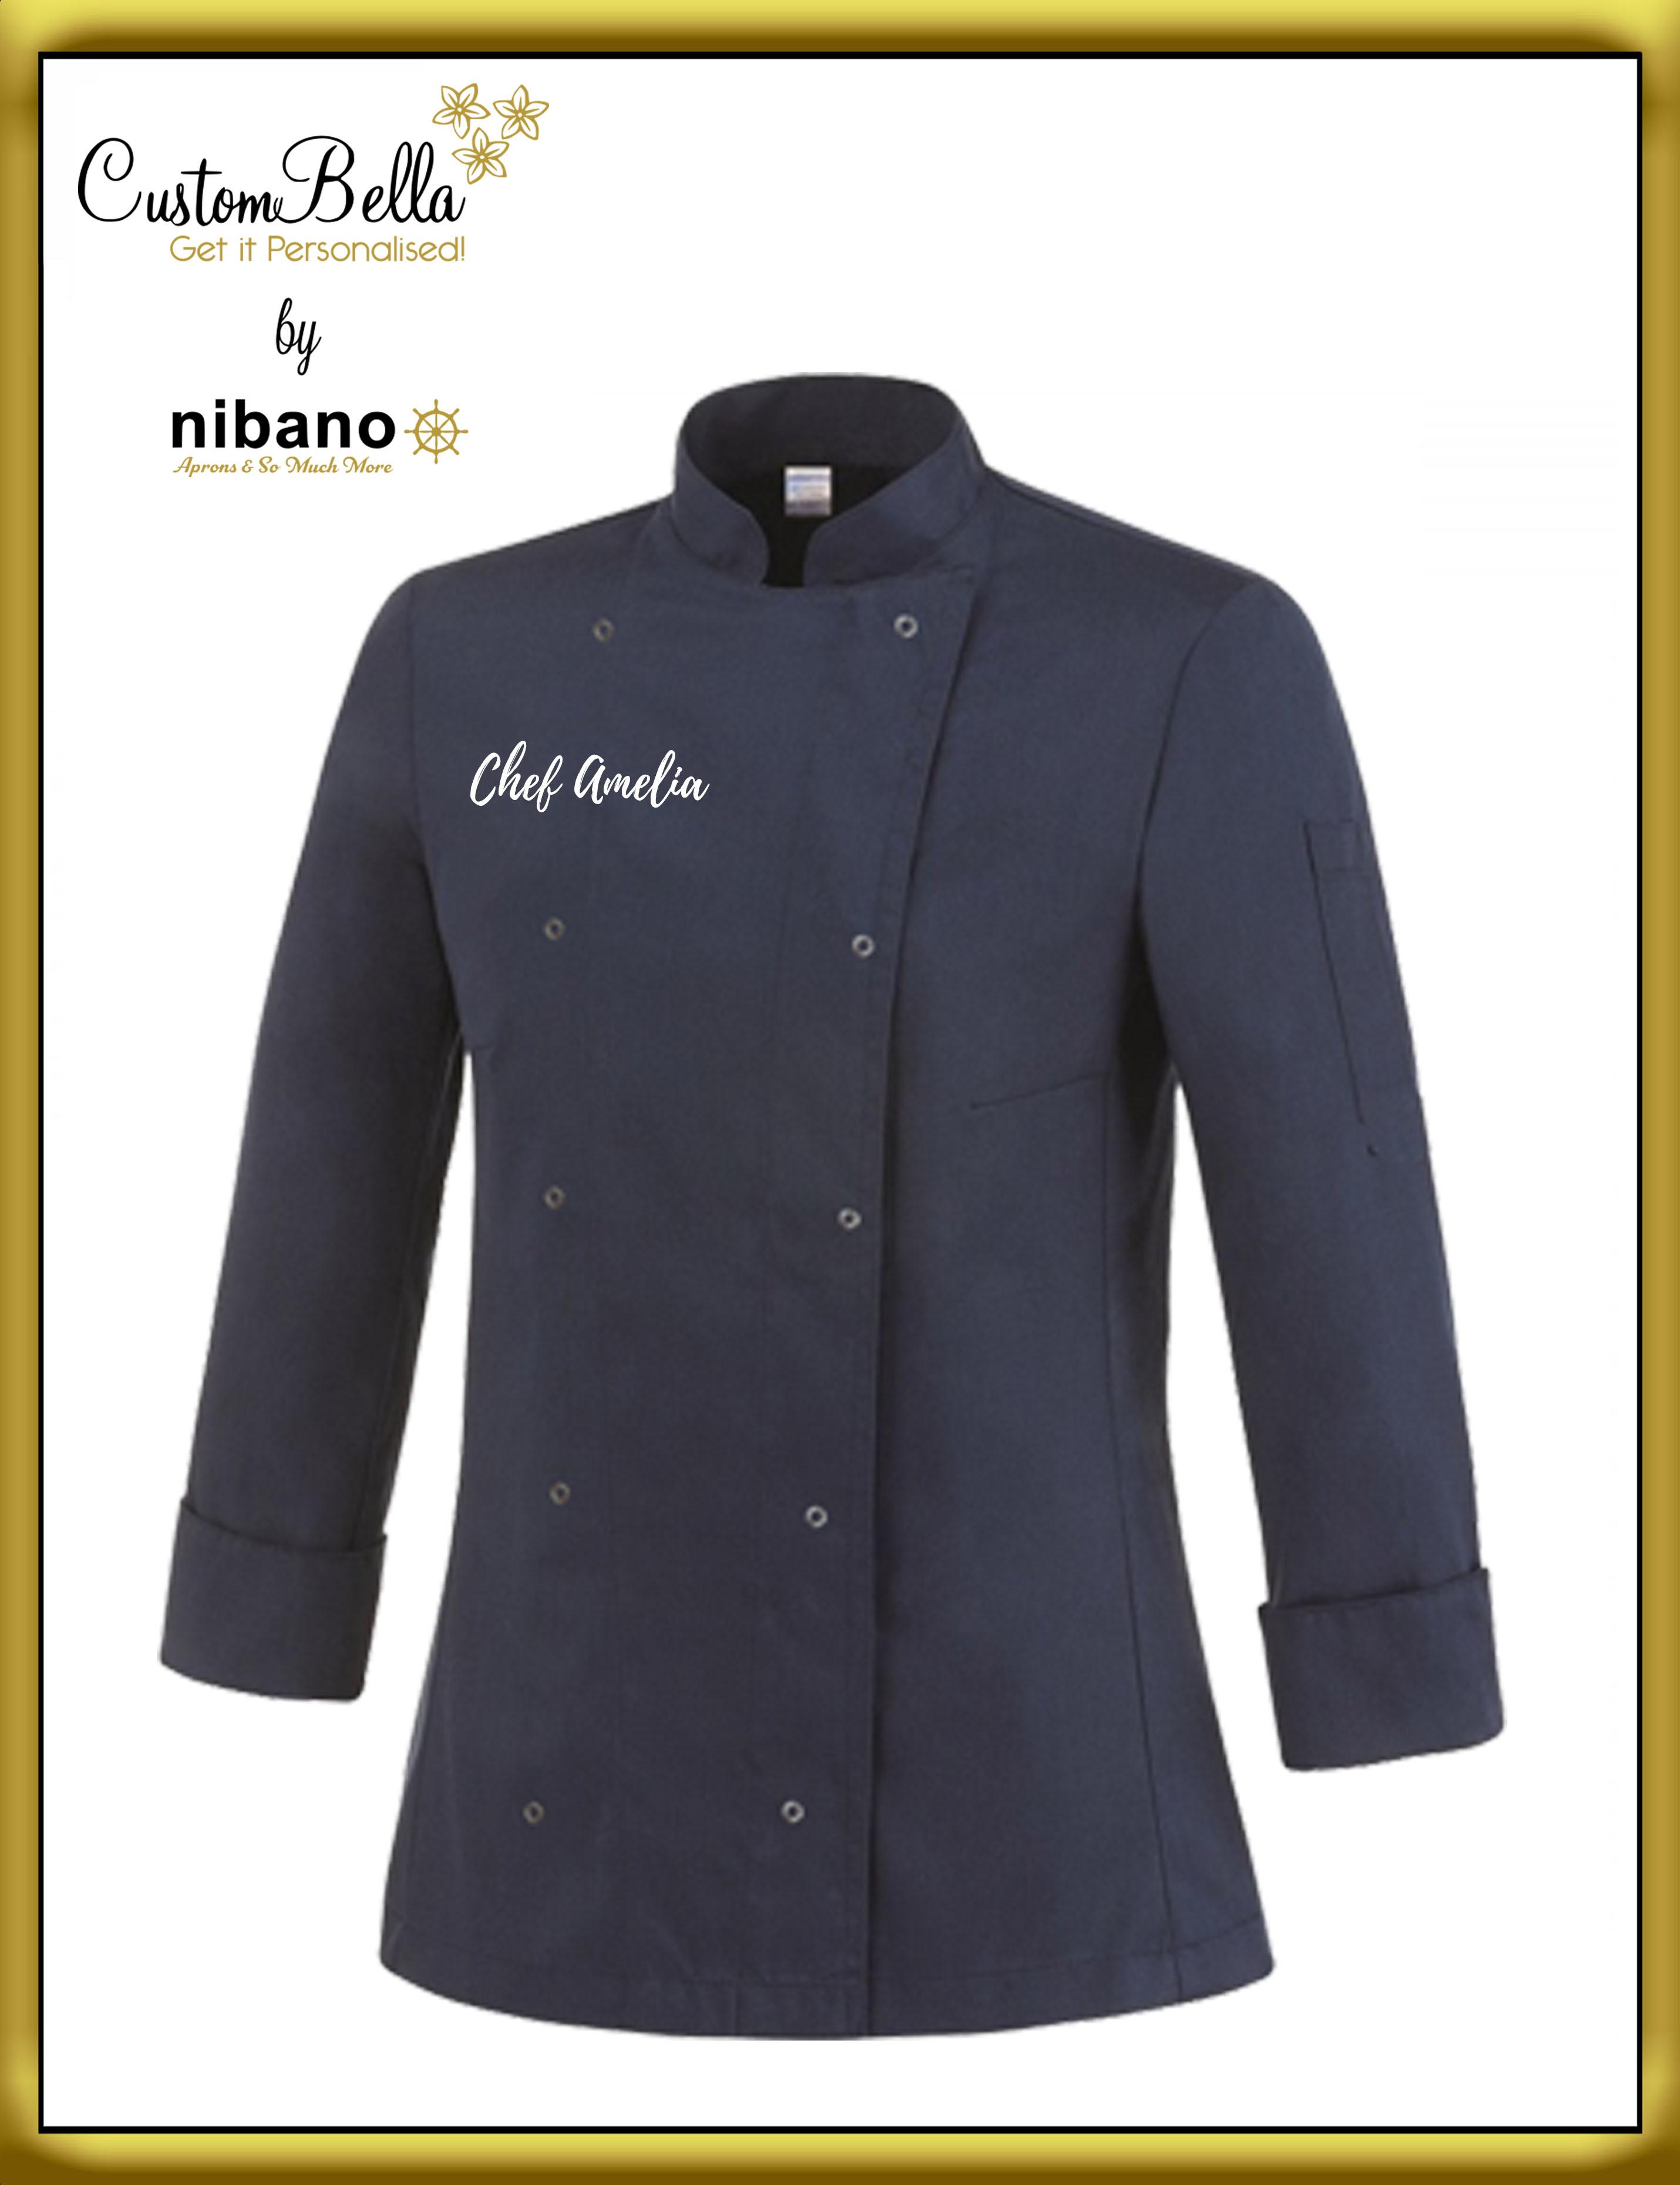 Personalised Long Sleeve Ladies Chef's Jacket black